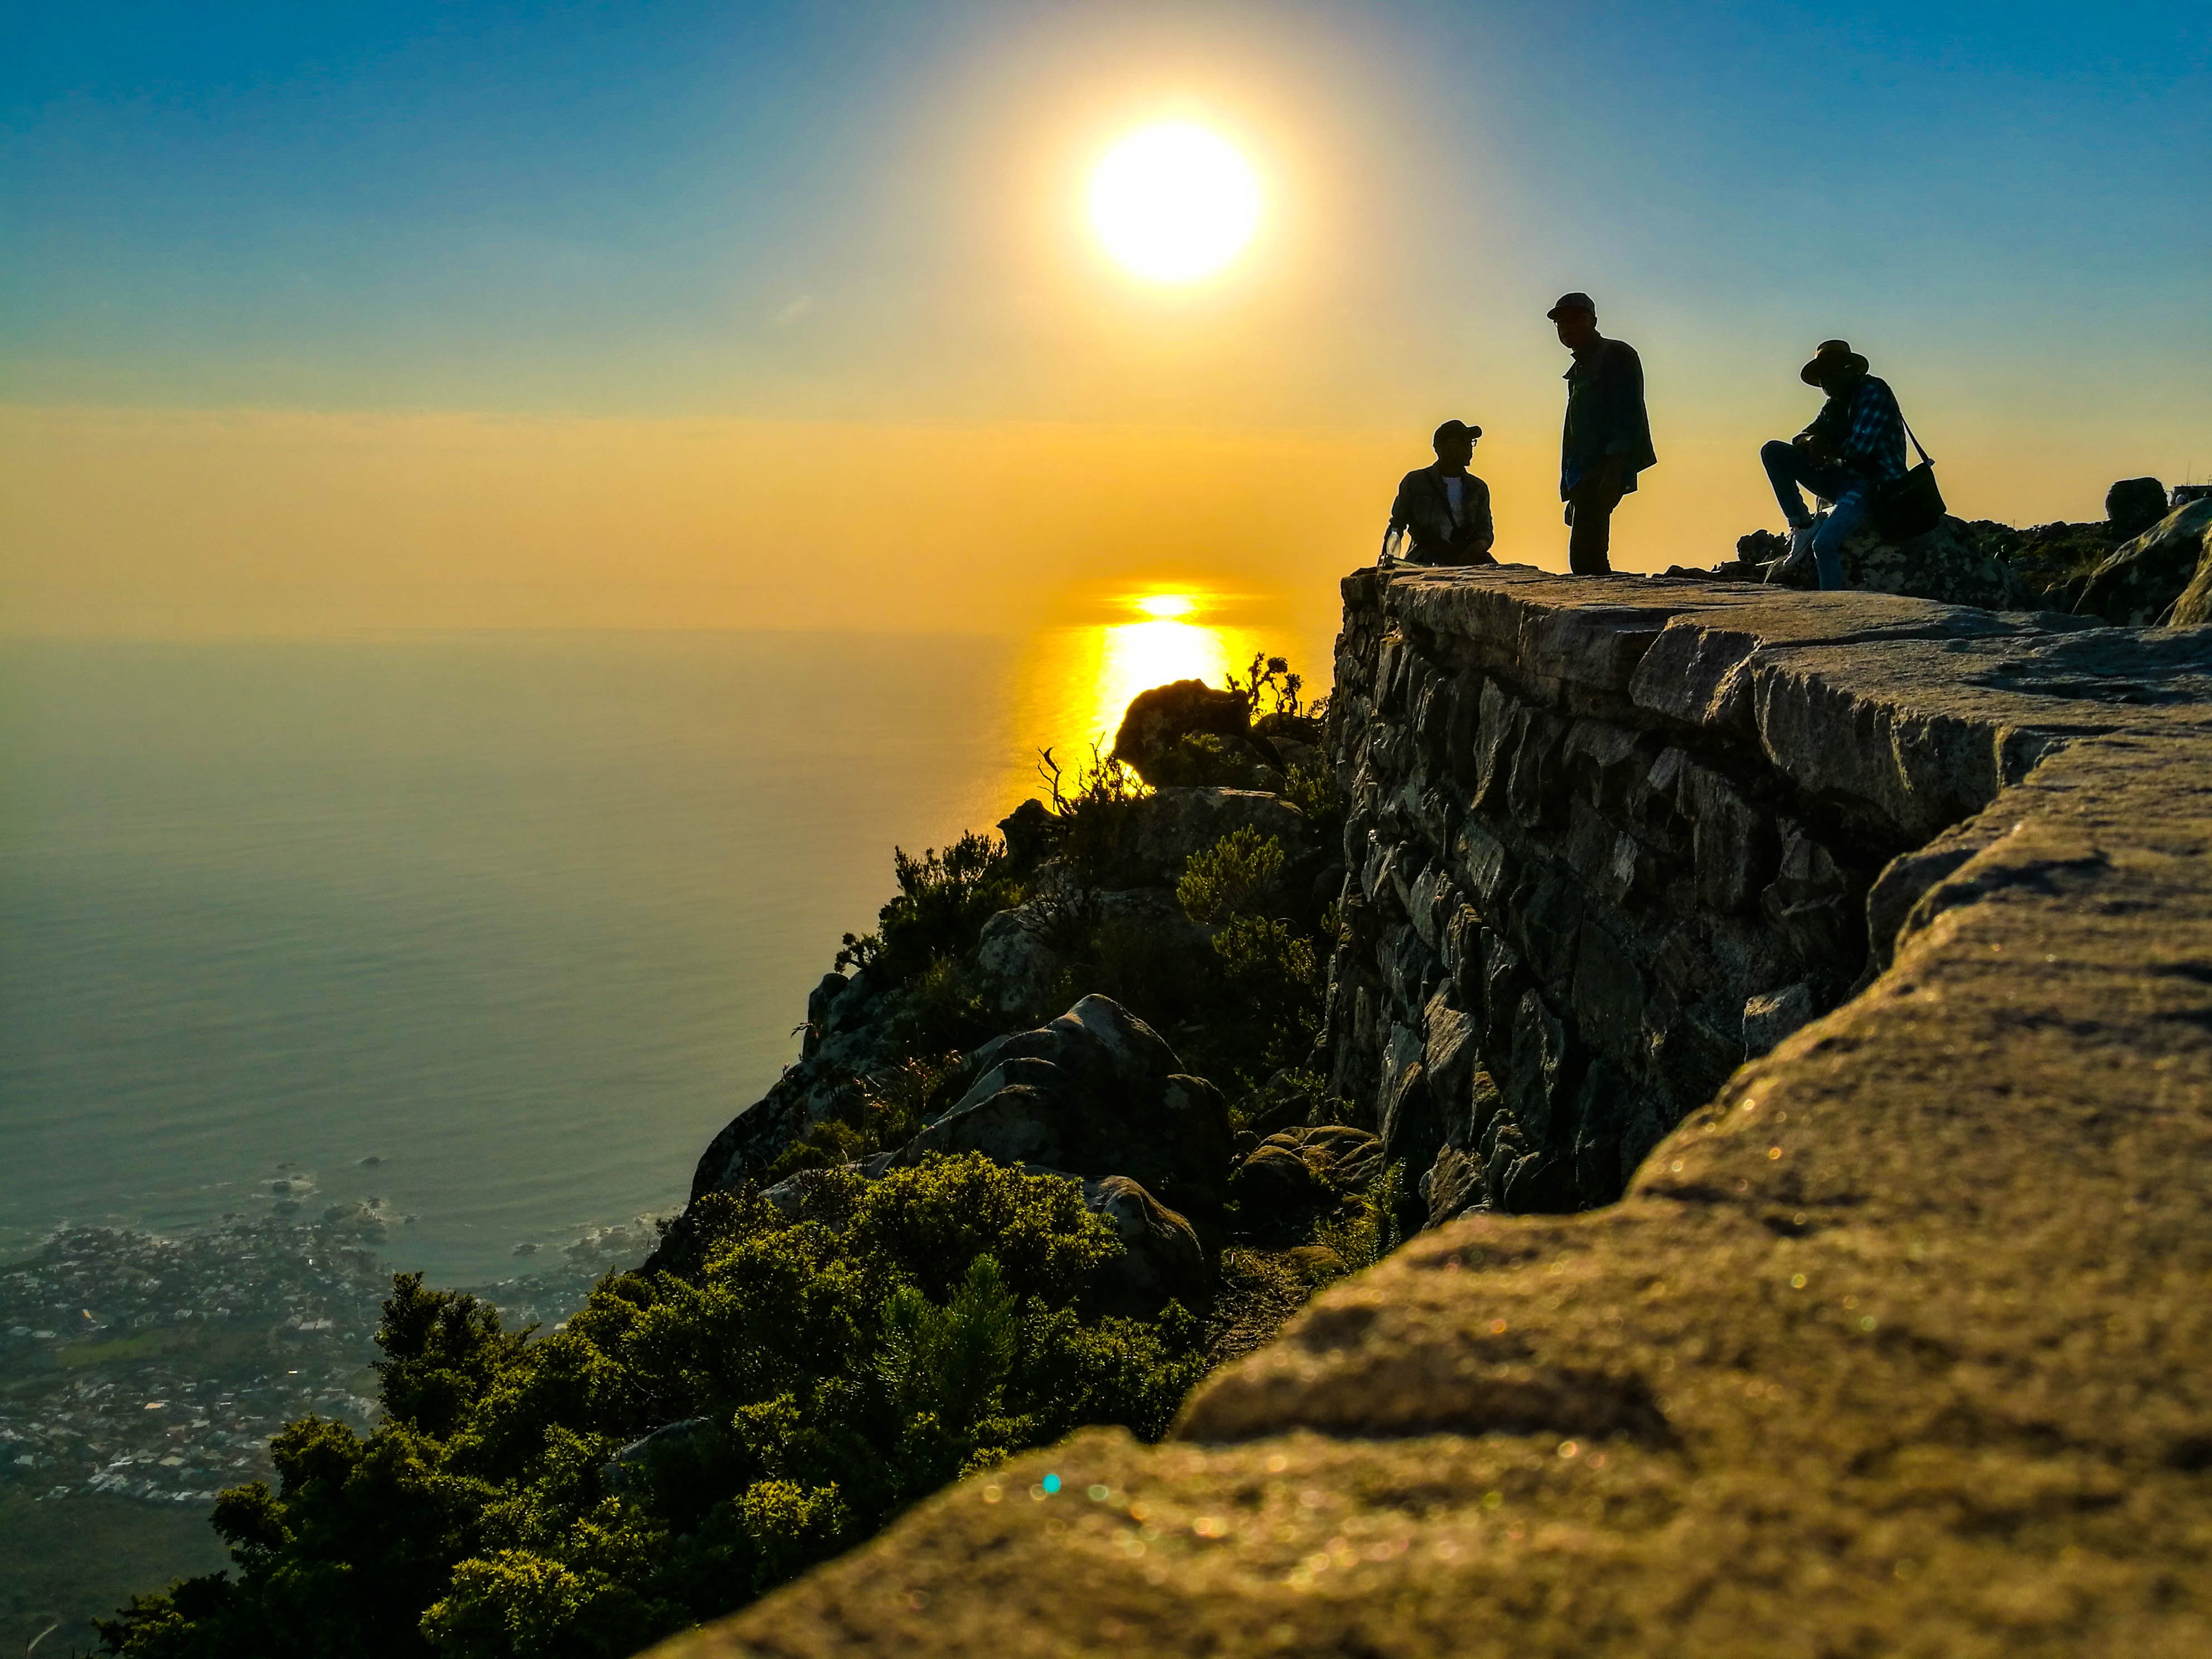 Three men on mountain cliff photo